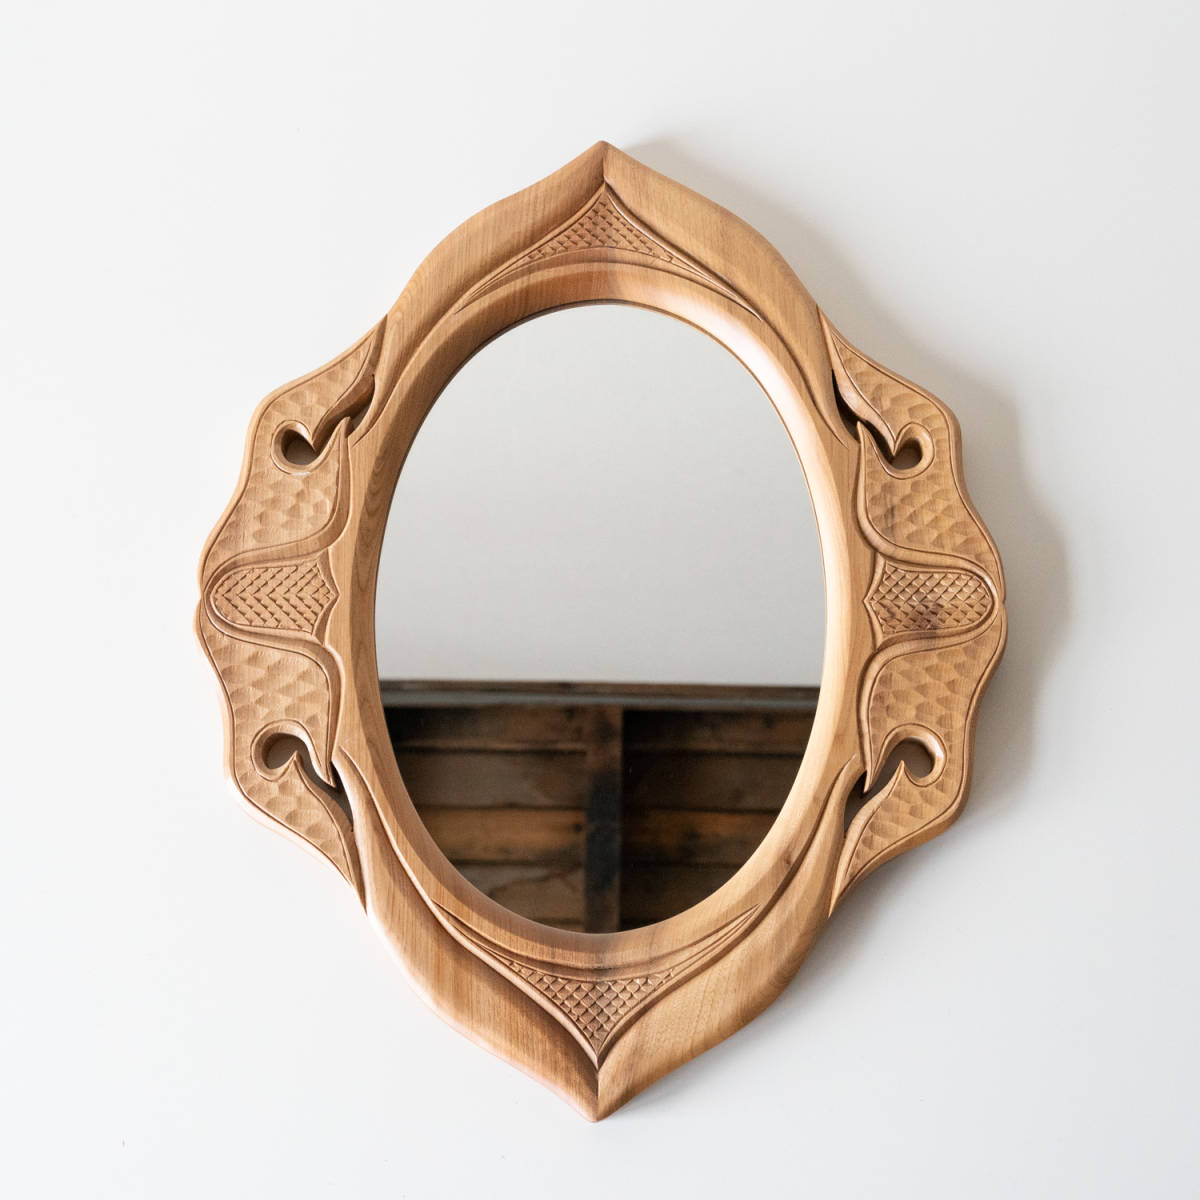 ショッピング卸売り 木製 木彫 白 壁掛けミラー アンティーク調 ハンドメイド コピー:1242円  壁に取り付けられた鏡